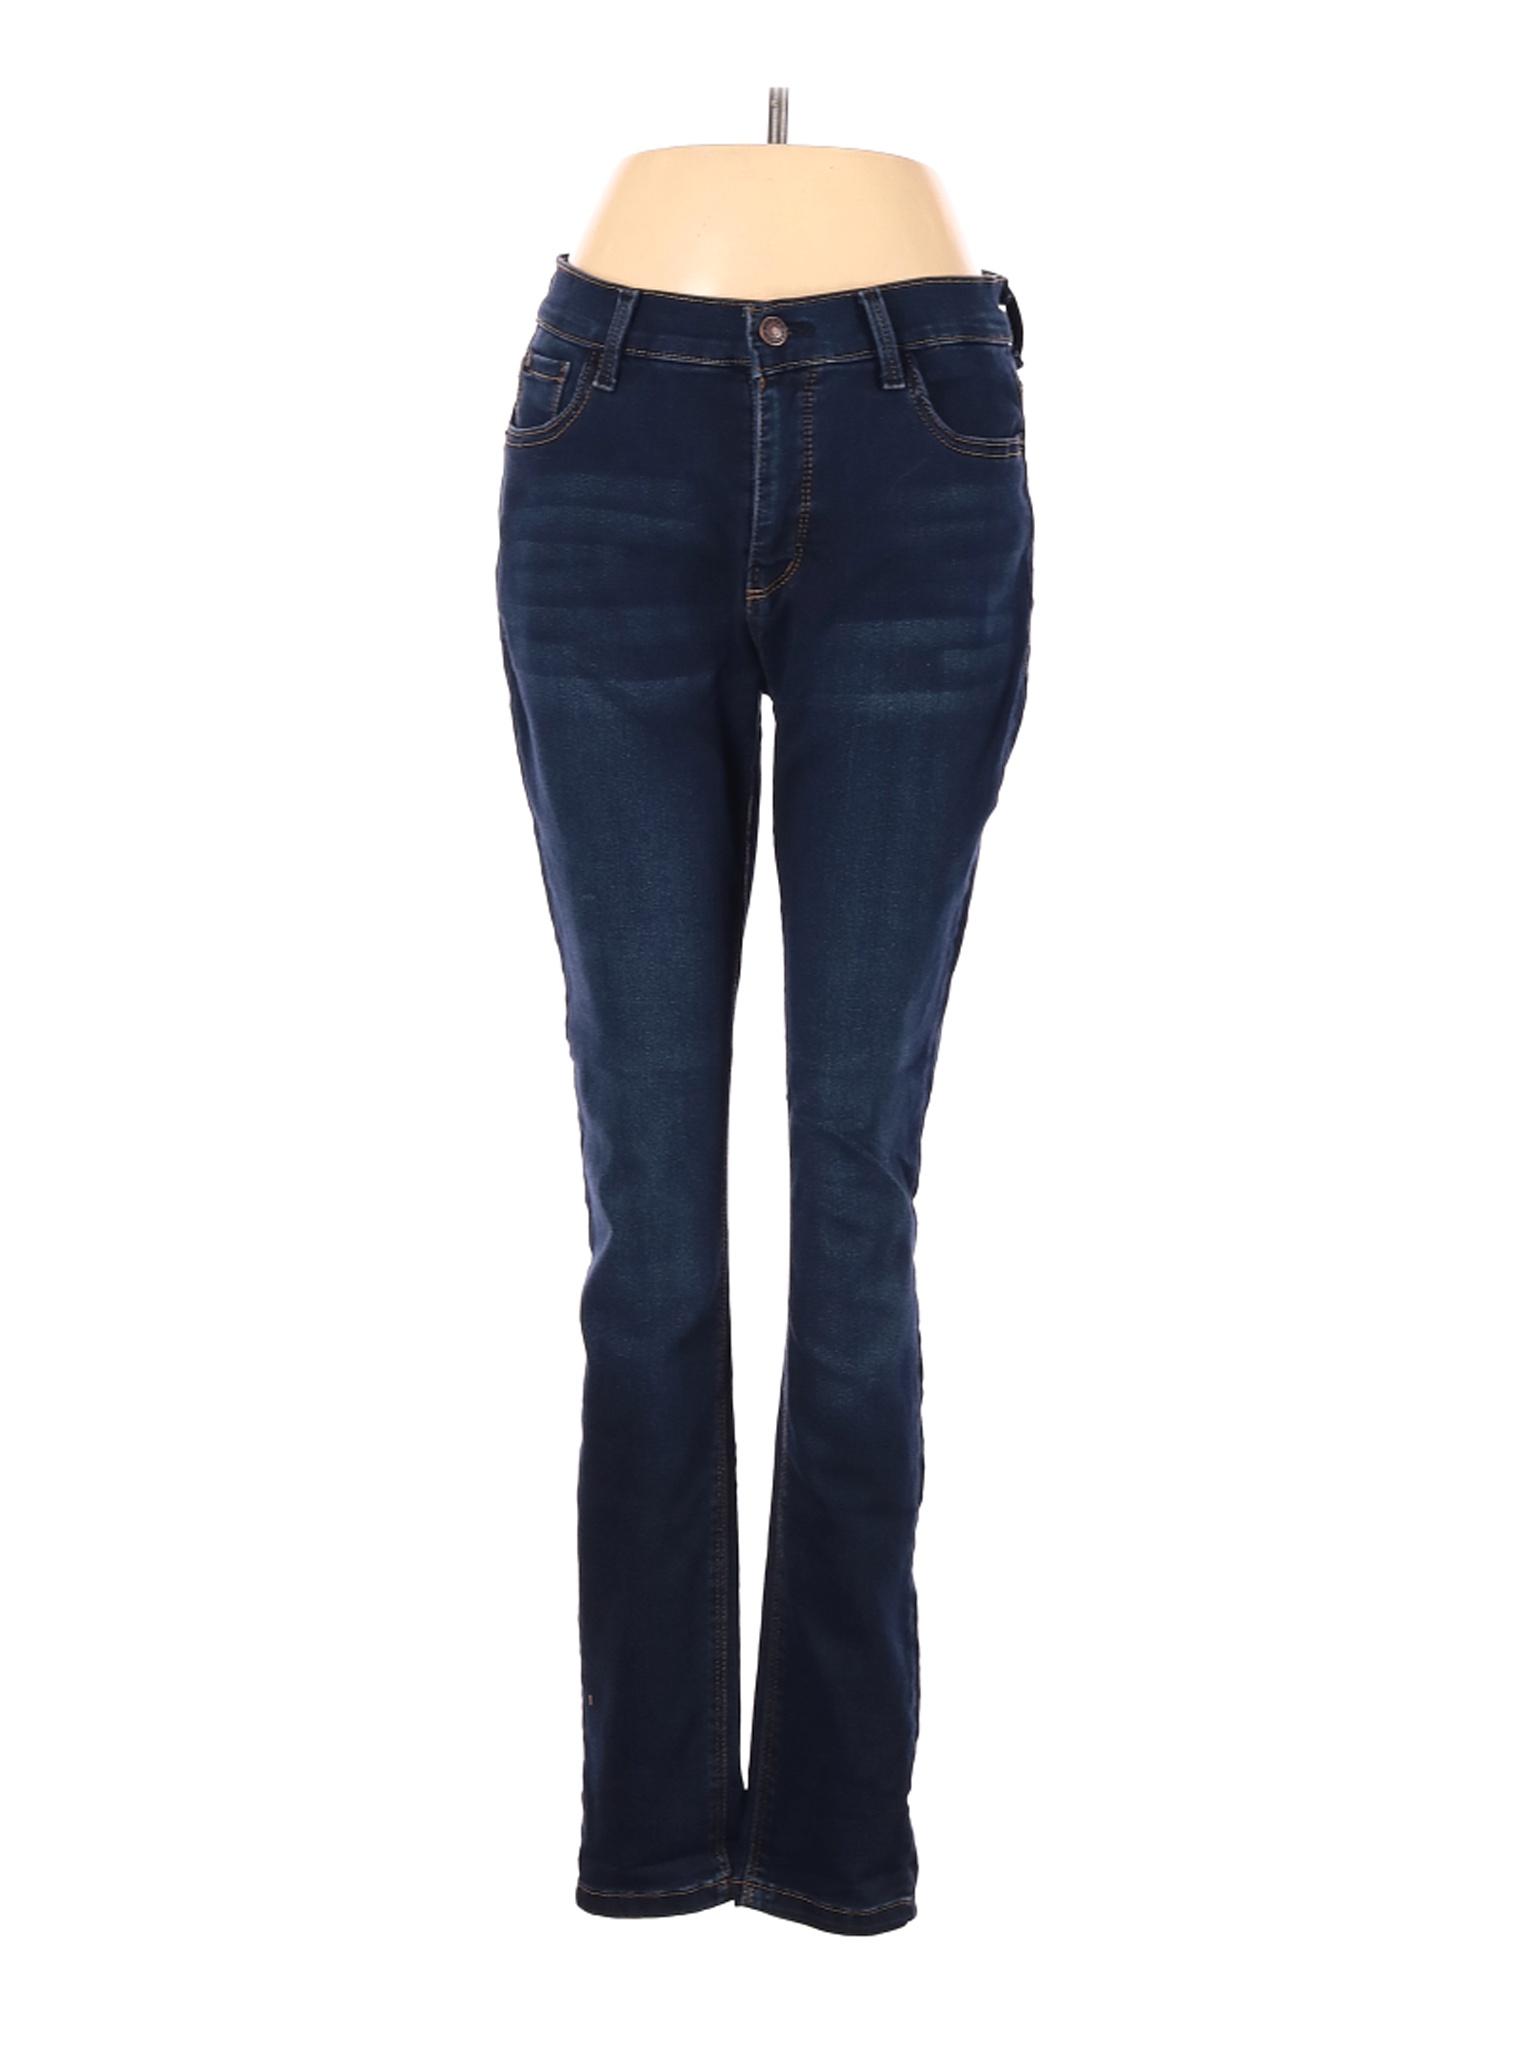 Curve Appeal Women Blue Jeans 29W | eBay